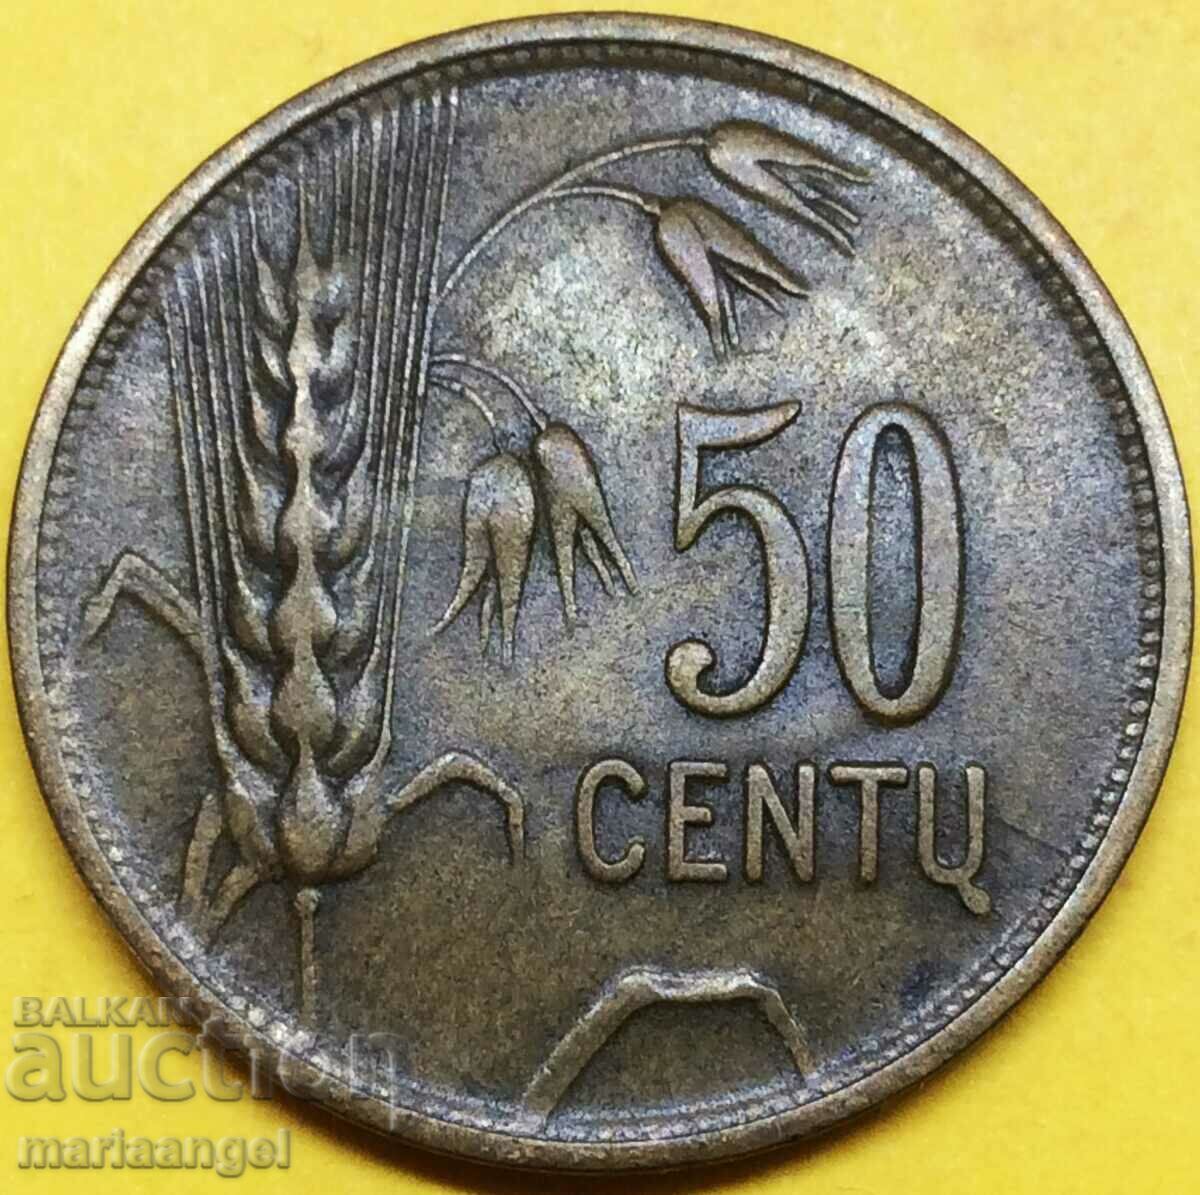 Литва 1925 50 цента - рядка